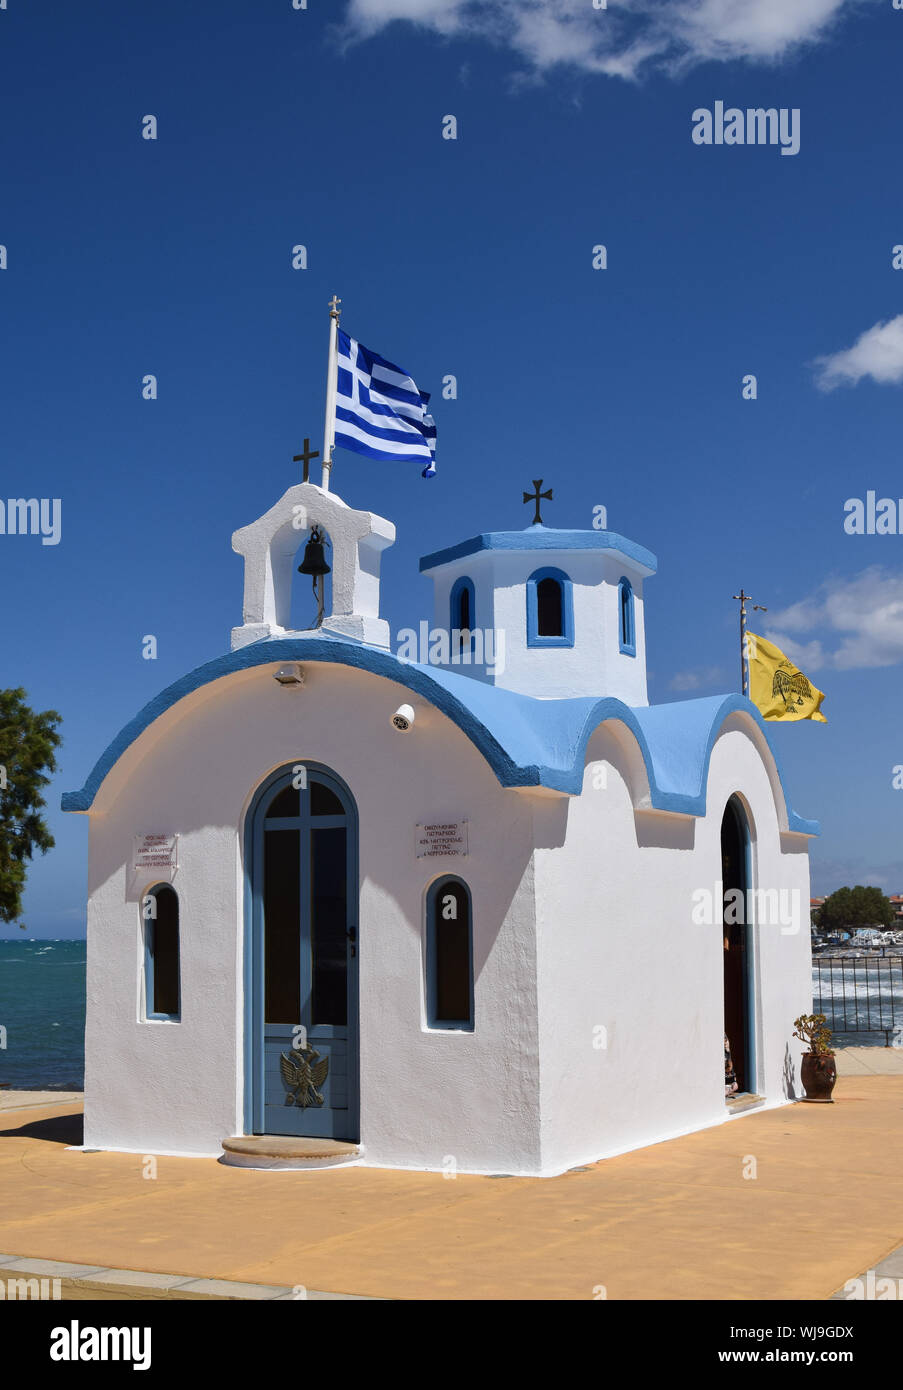 Greece Flag On Church Against Sky Stock Photo